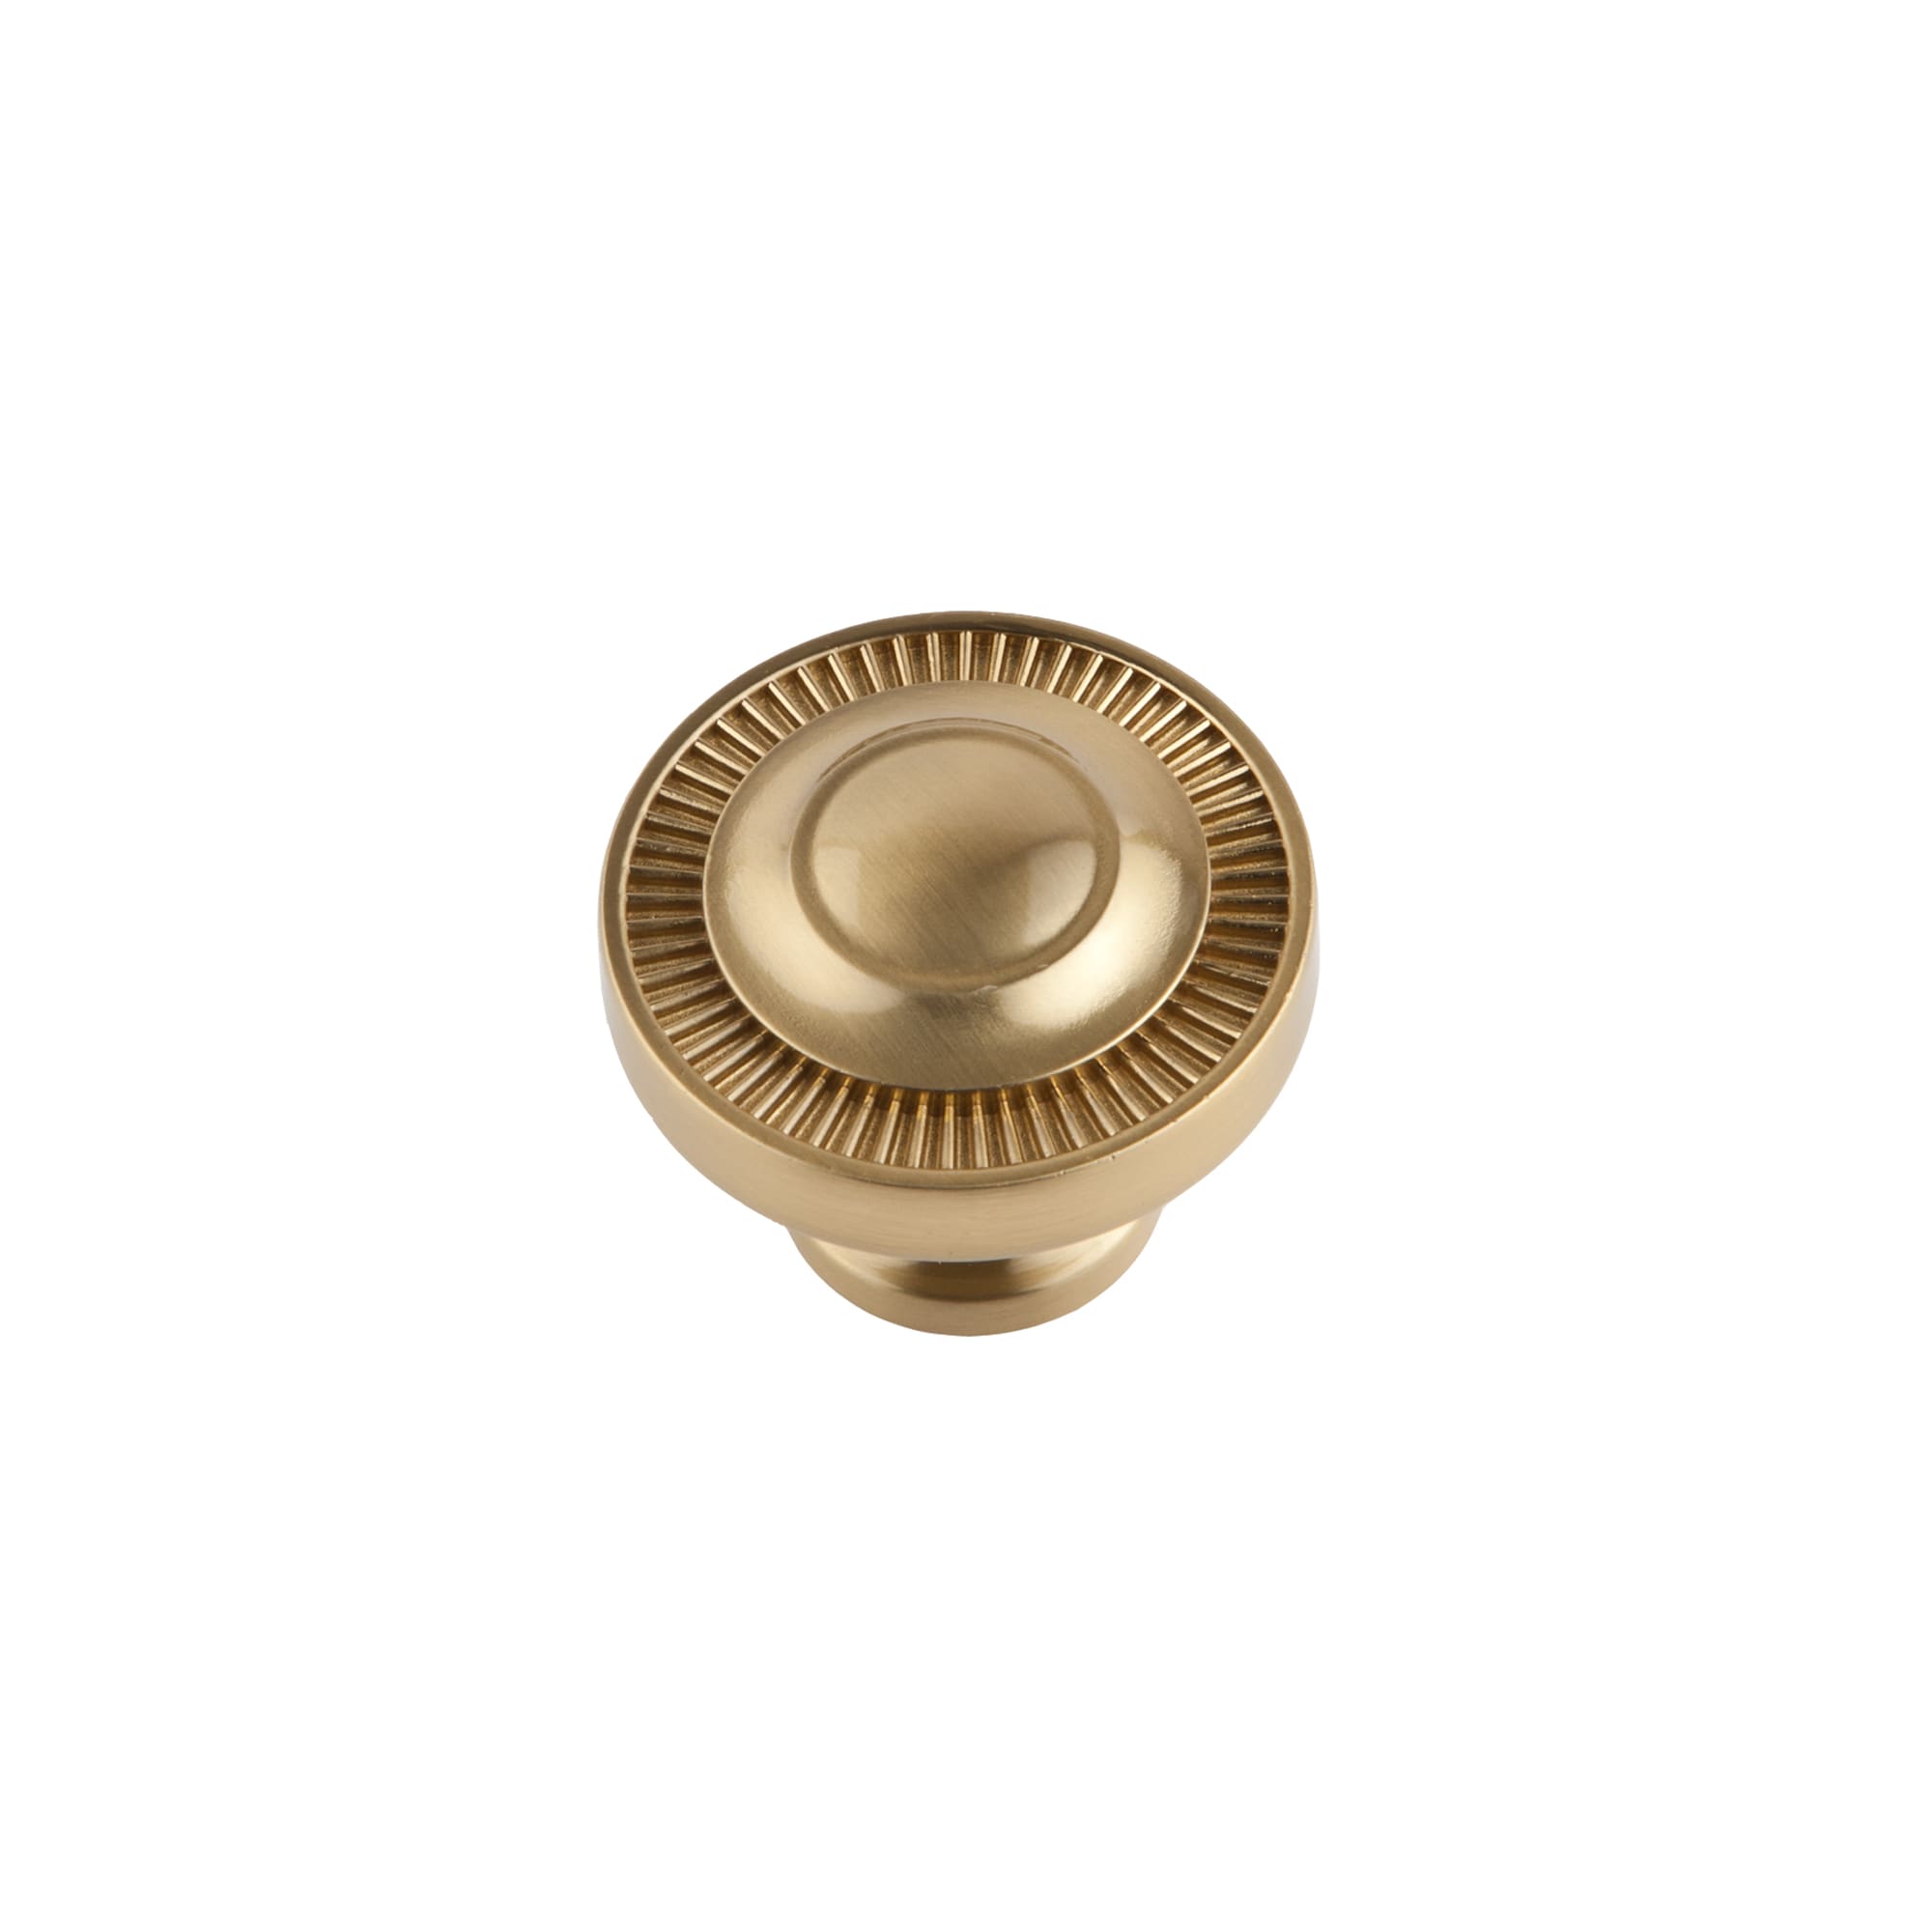 Sumner Street Home Hardware Minted 1-1/2-in Satin Brass Round